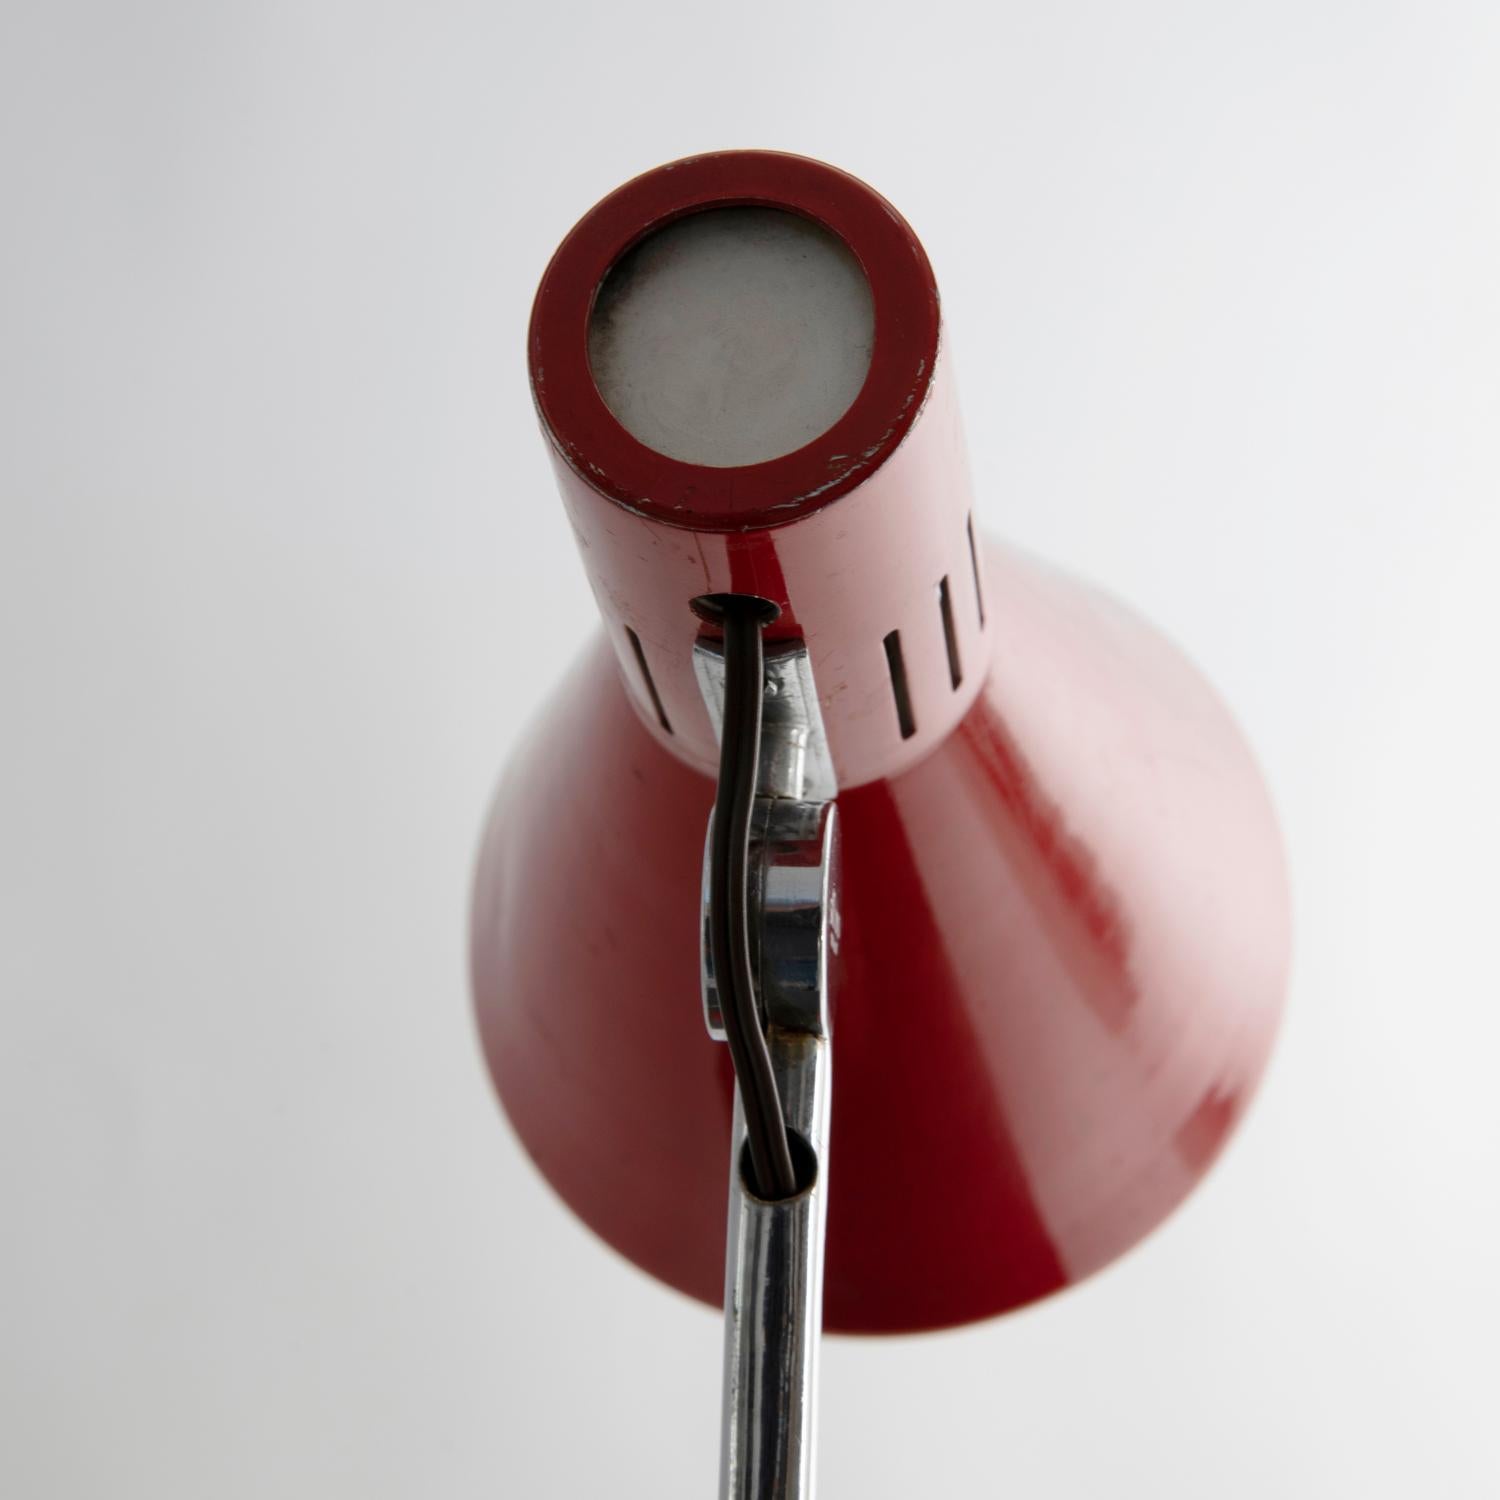 Aluminum Red Stilnovo mod. 8042 Desk Lamp from the 1950s